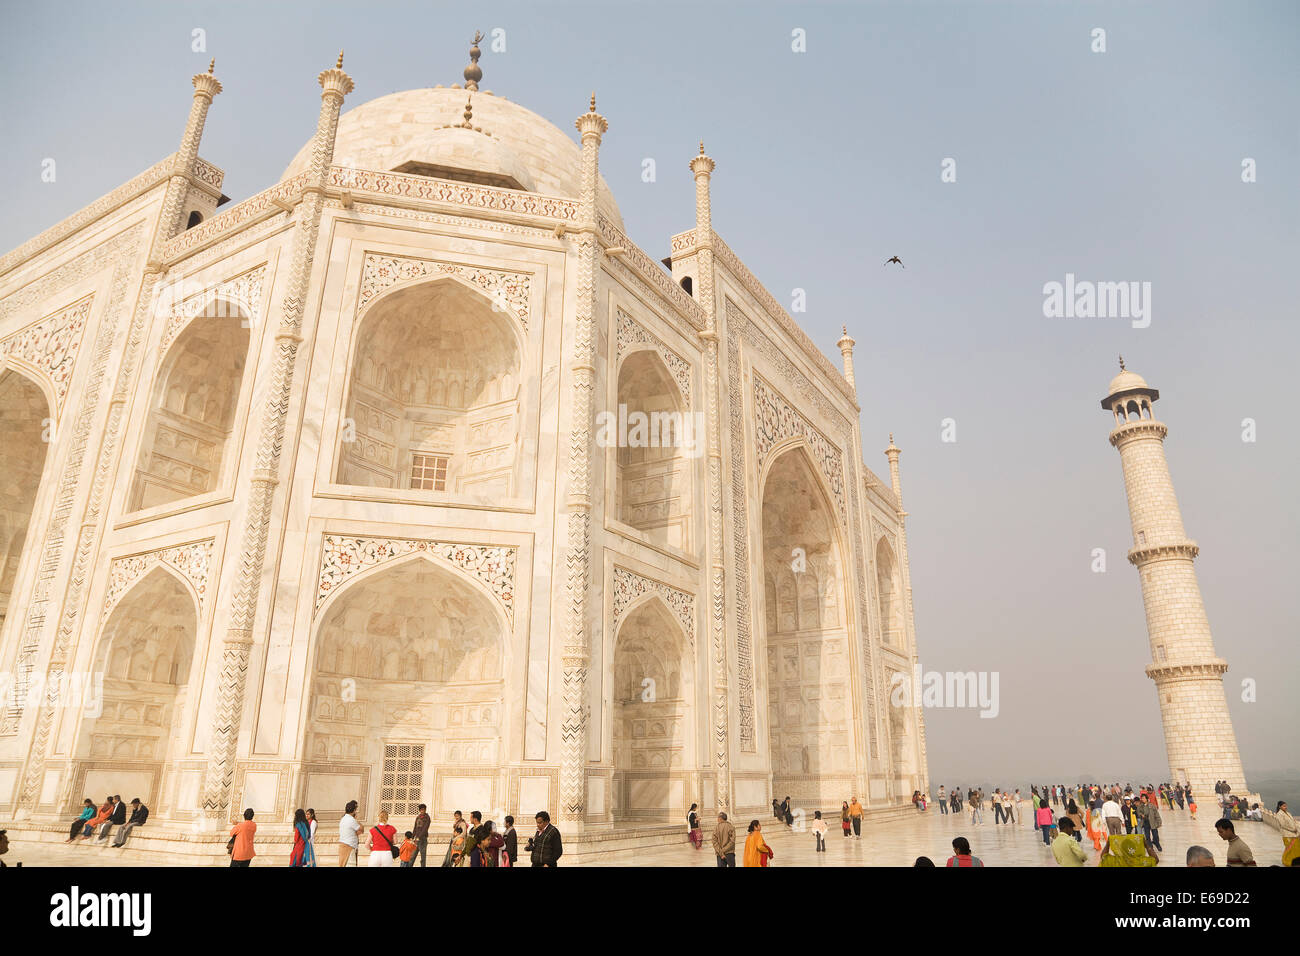 Shah Jahan ouvragée et tour de la mosquée, Agra, Inde Banque D'Images